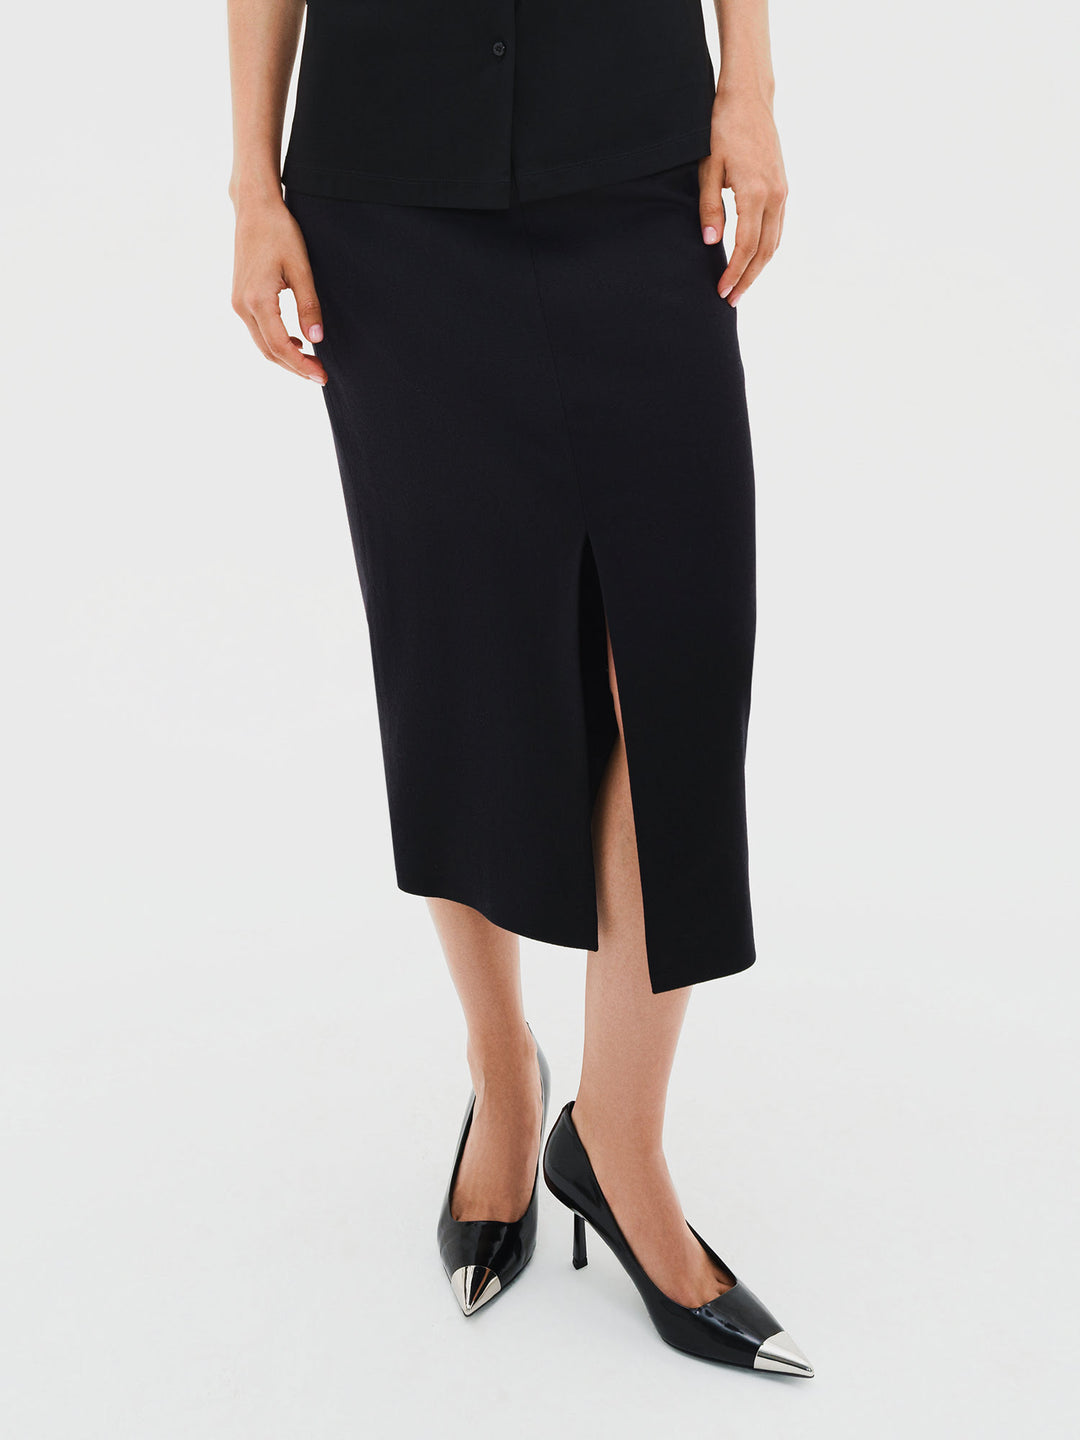 Karla wool blend skirt (black)